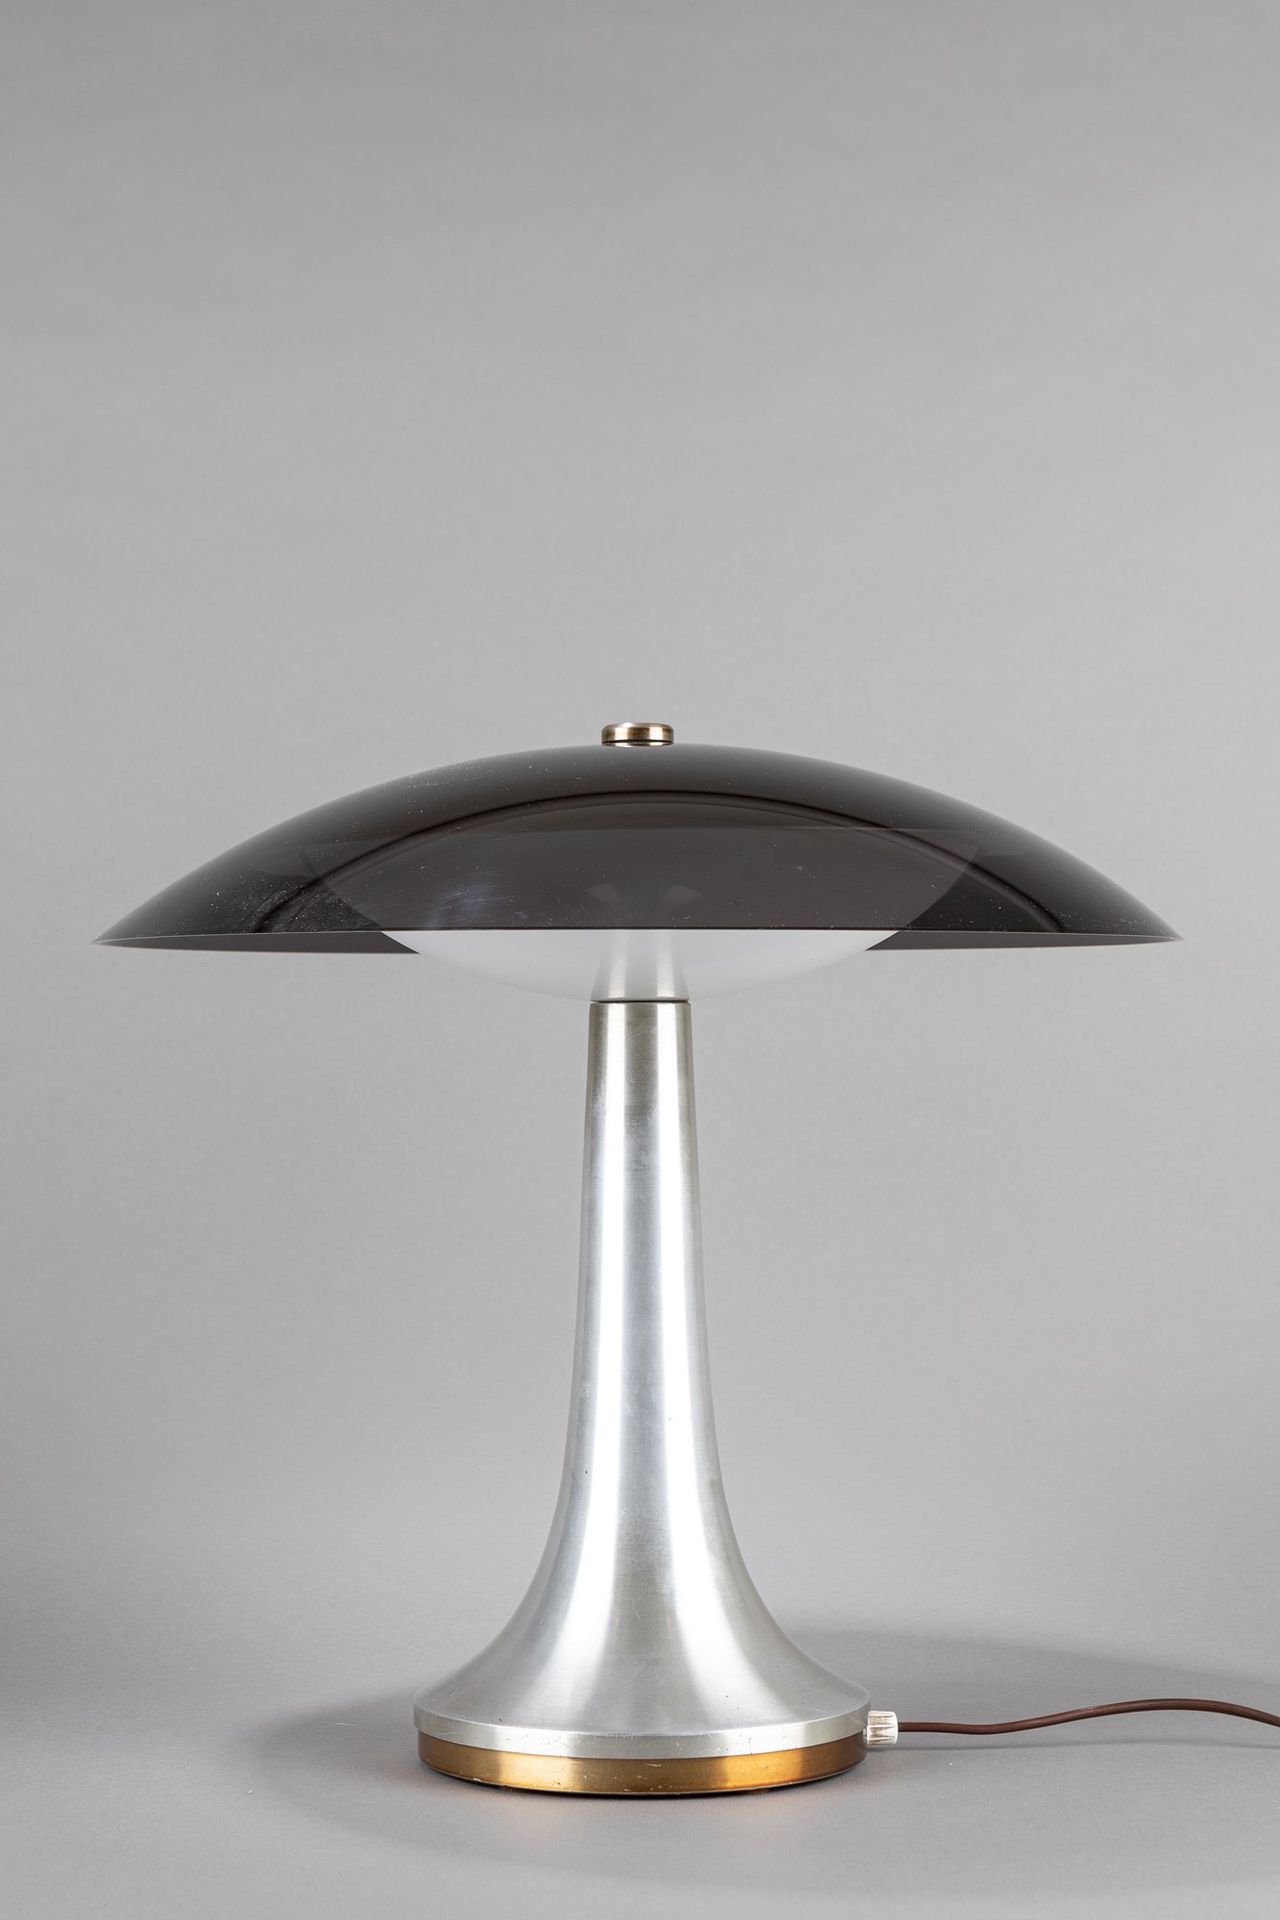 Stilux Lampe de table, 1960 env.

H 45 cm
laiton nickelé brossé, alumium, plexig&hellip;